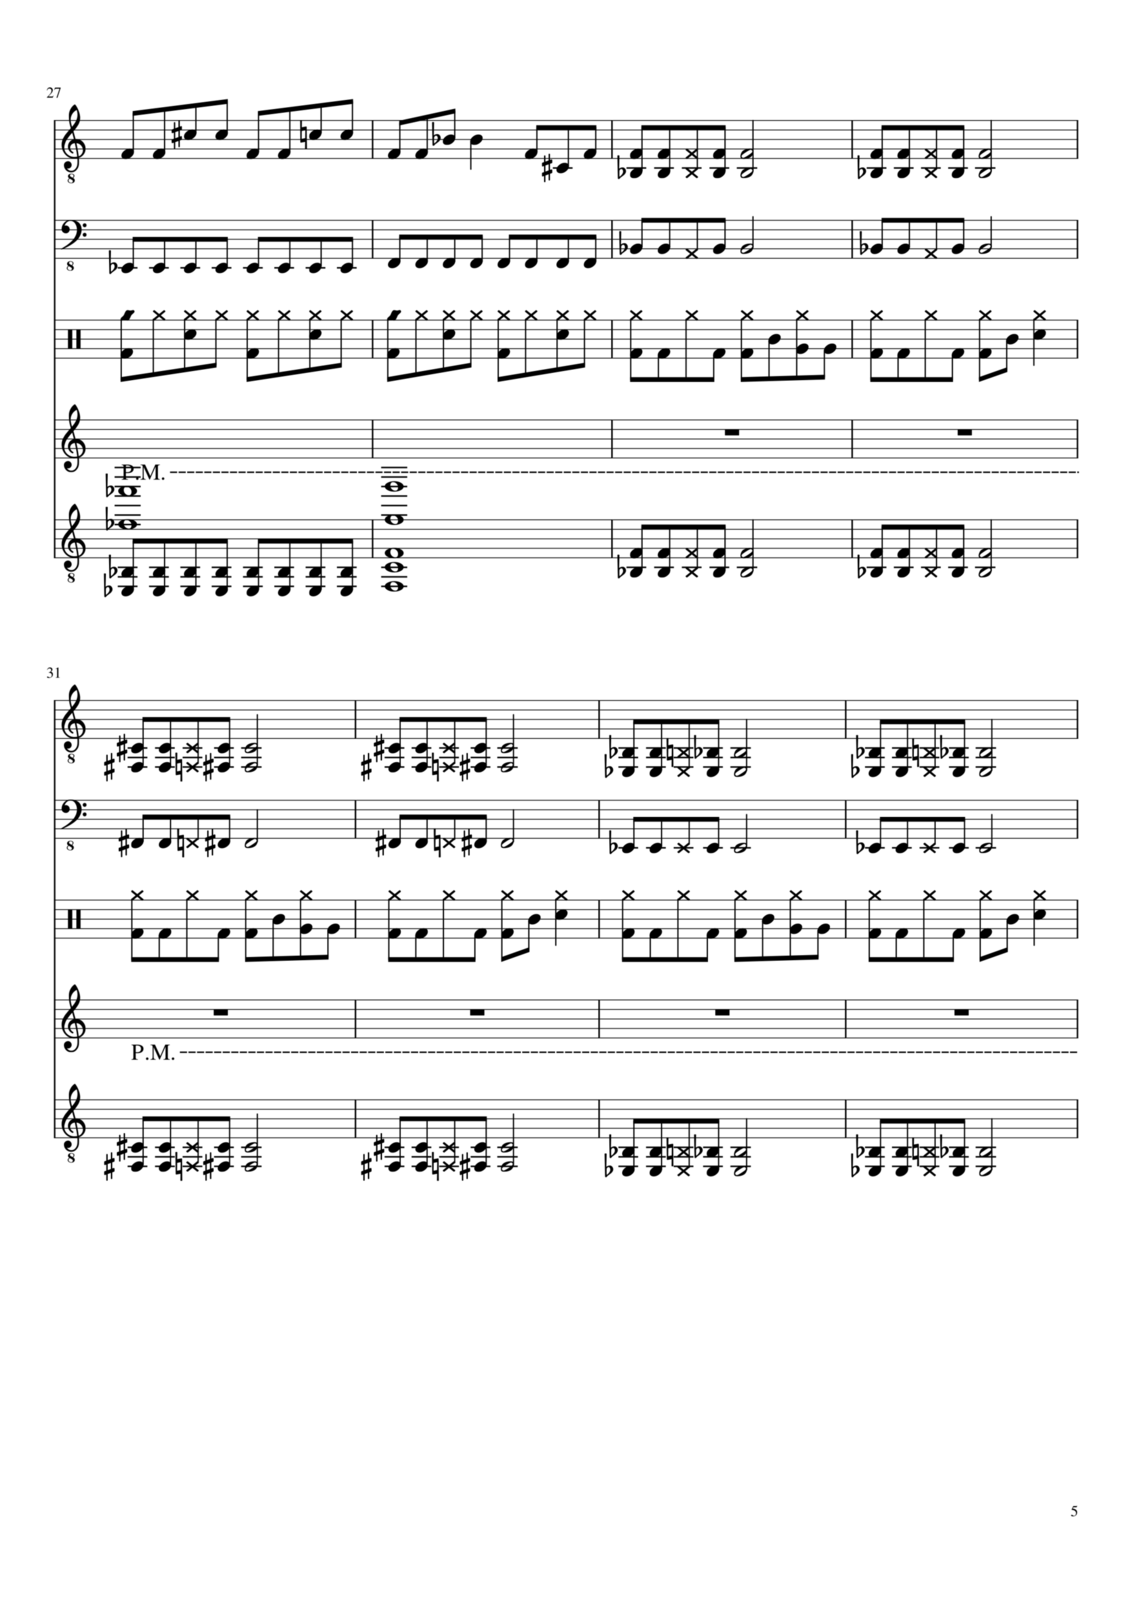 Vechnaya prizrachnaya vstrechnaya slide, Image 5